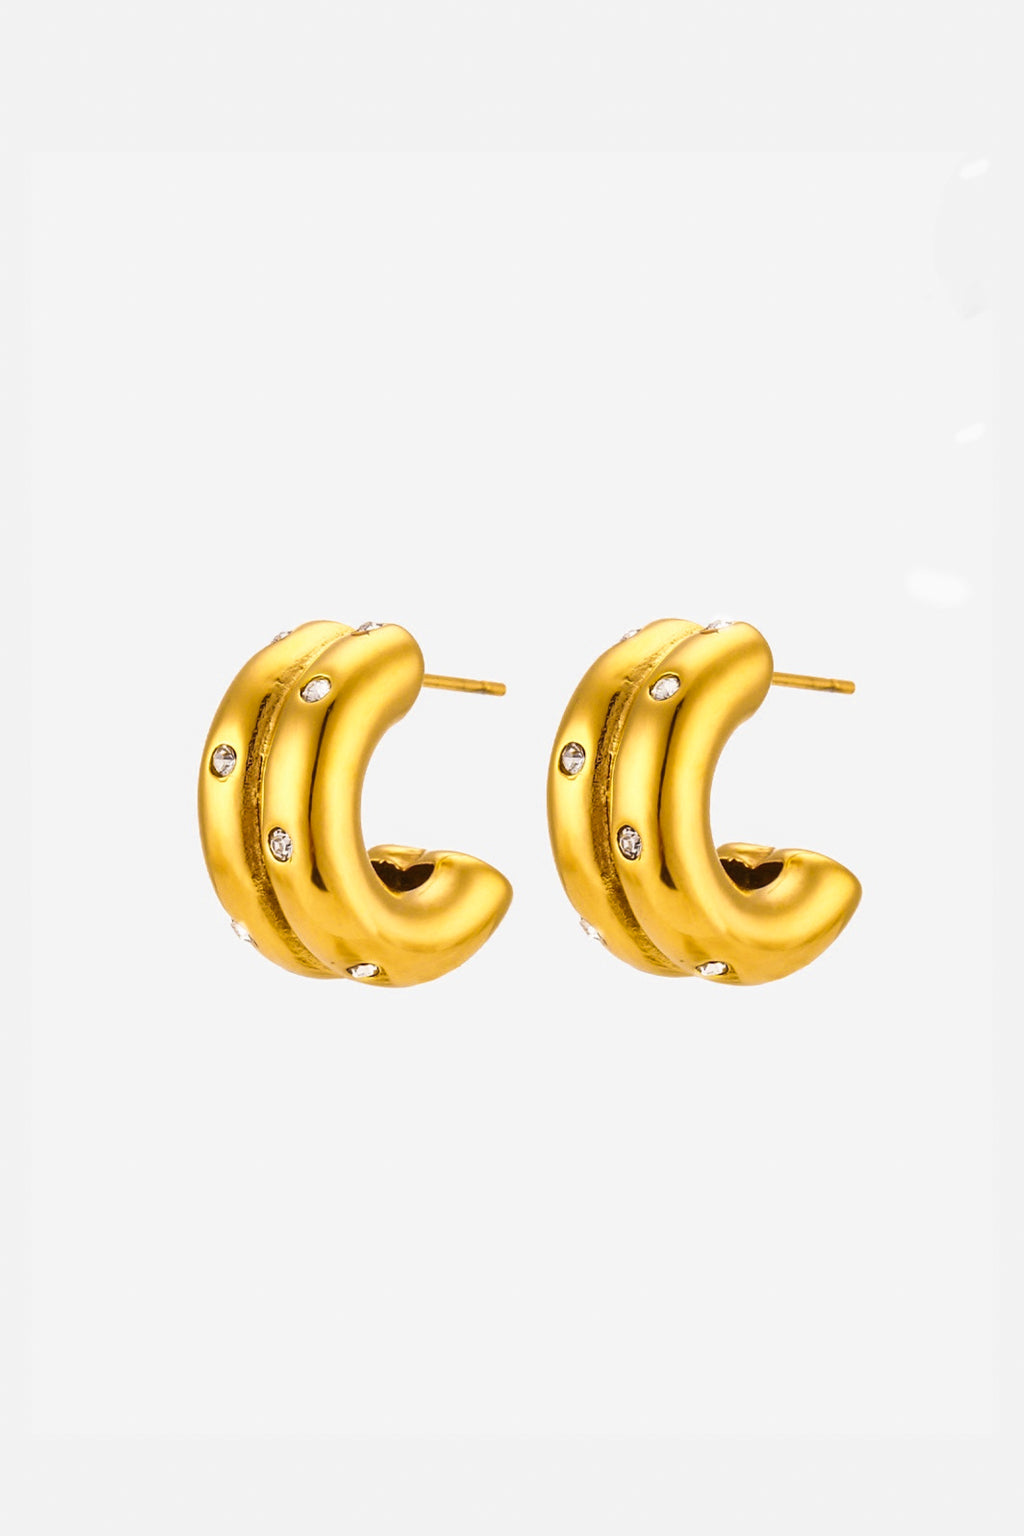 C-shaped earrings